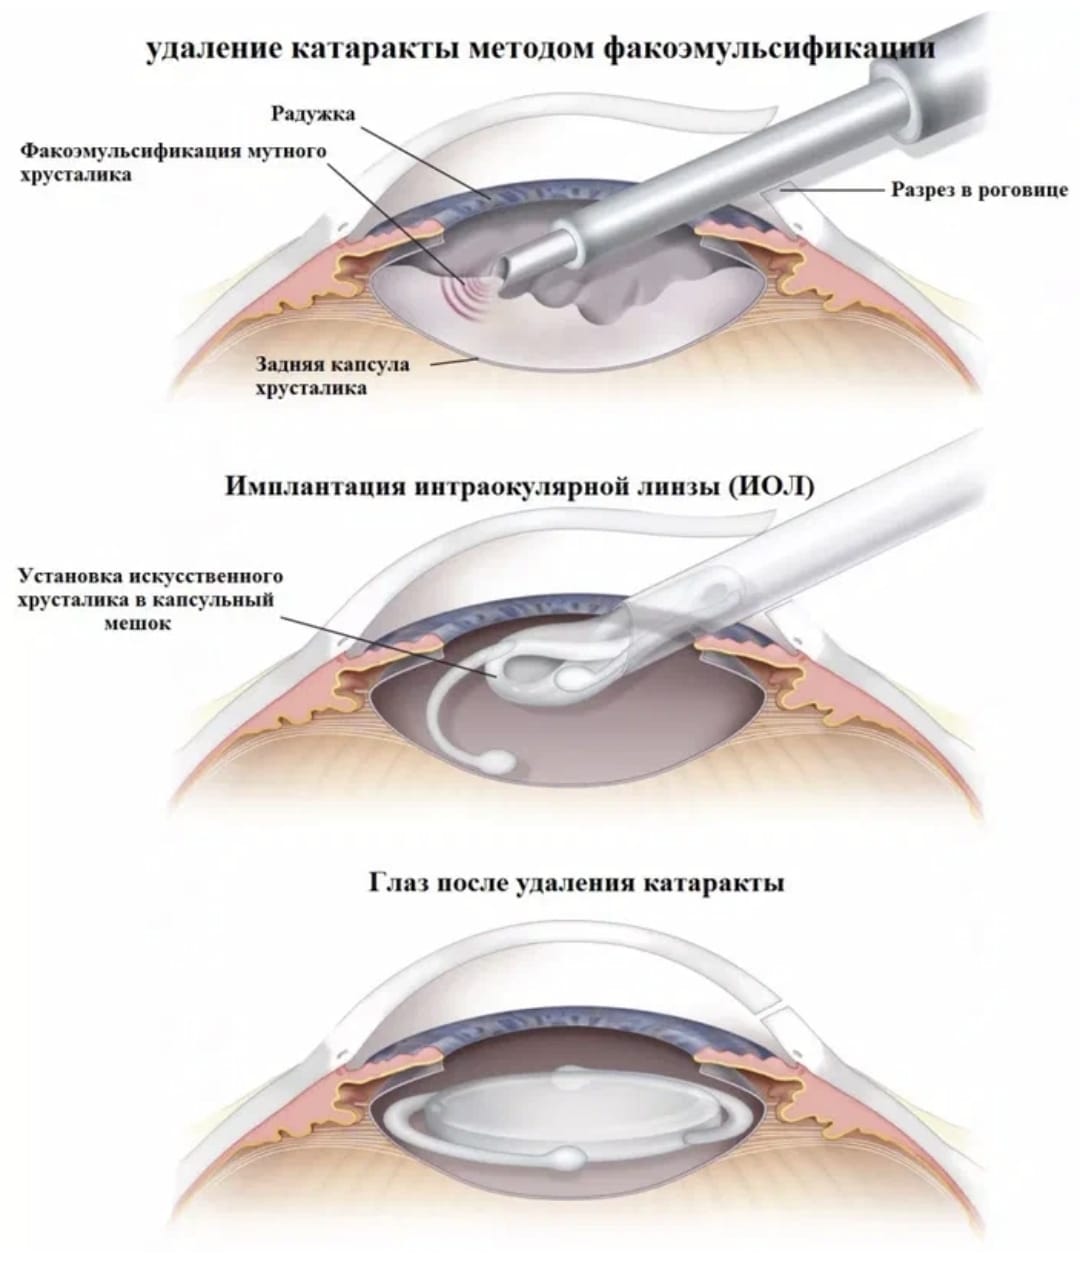 Когда после замены хрусталика восстанавливается зрение глаза. Ультразвуковая факоэмульсификация катаракты этапы. Ультразвуковая факоэмульсификация с имплантацией ИОЛ. Техника факоэмульсификации катаракты с имплантацией ИОЛ. Факоэмульсификация катаракты этапы операции.